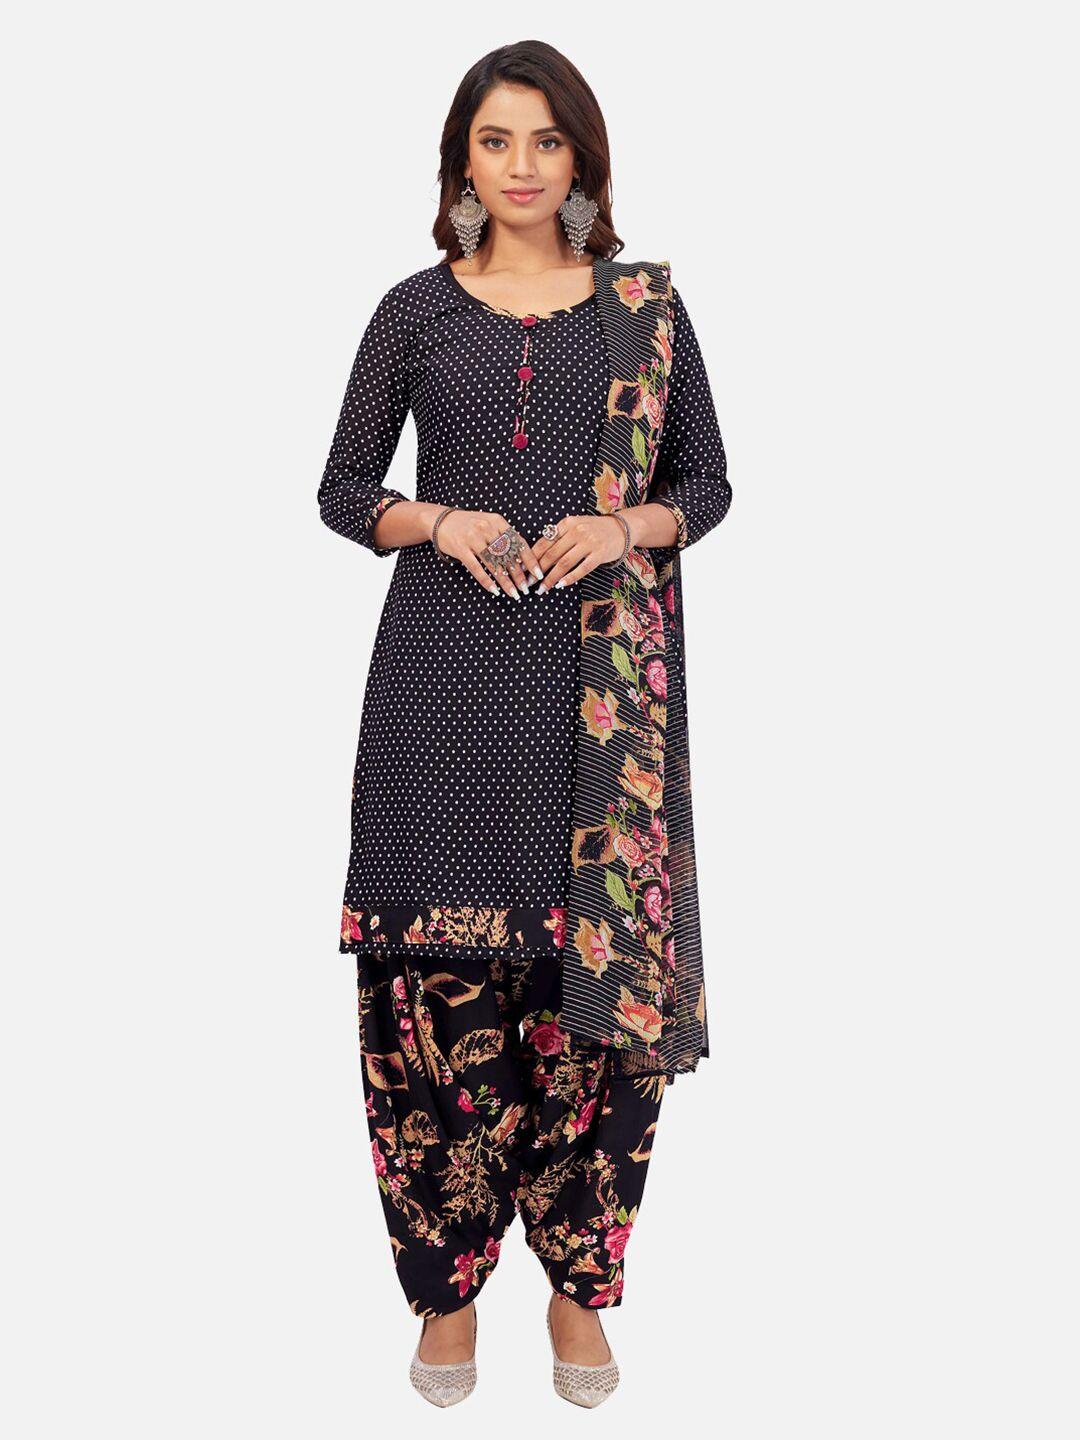 salwar studio floral printed unstitched dress material